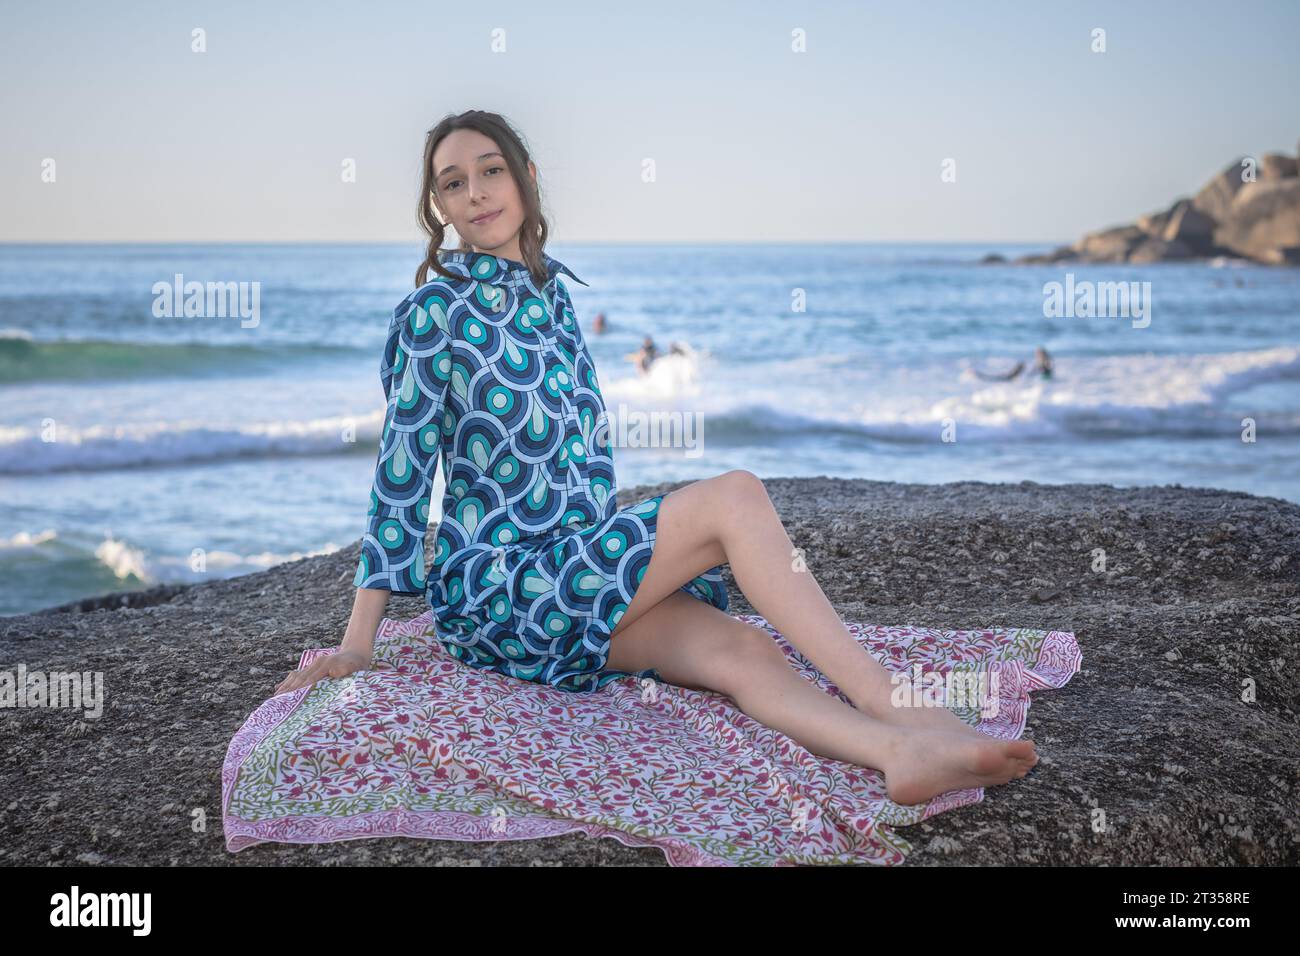 Am späten Nachmittag sitzt eine 20-jährige Kaukasierin auf einem Felsbrocken, die in einem lebhaften, gemusterten Hemdkleid verziert ist Stockfoto